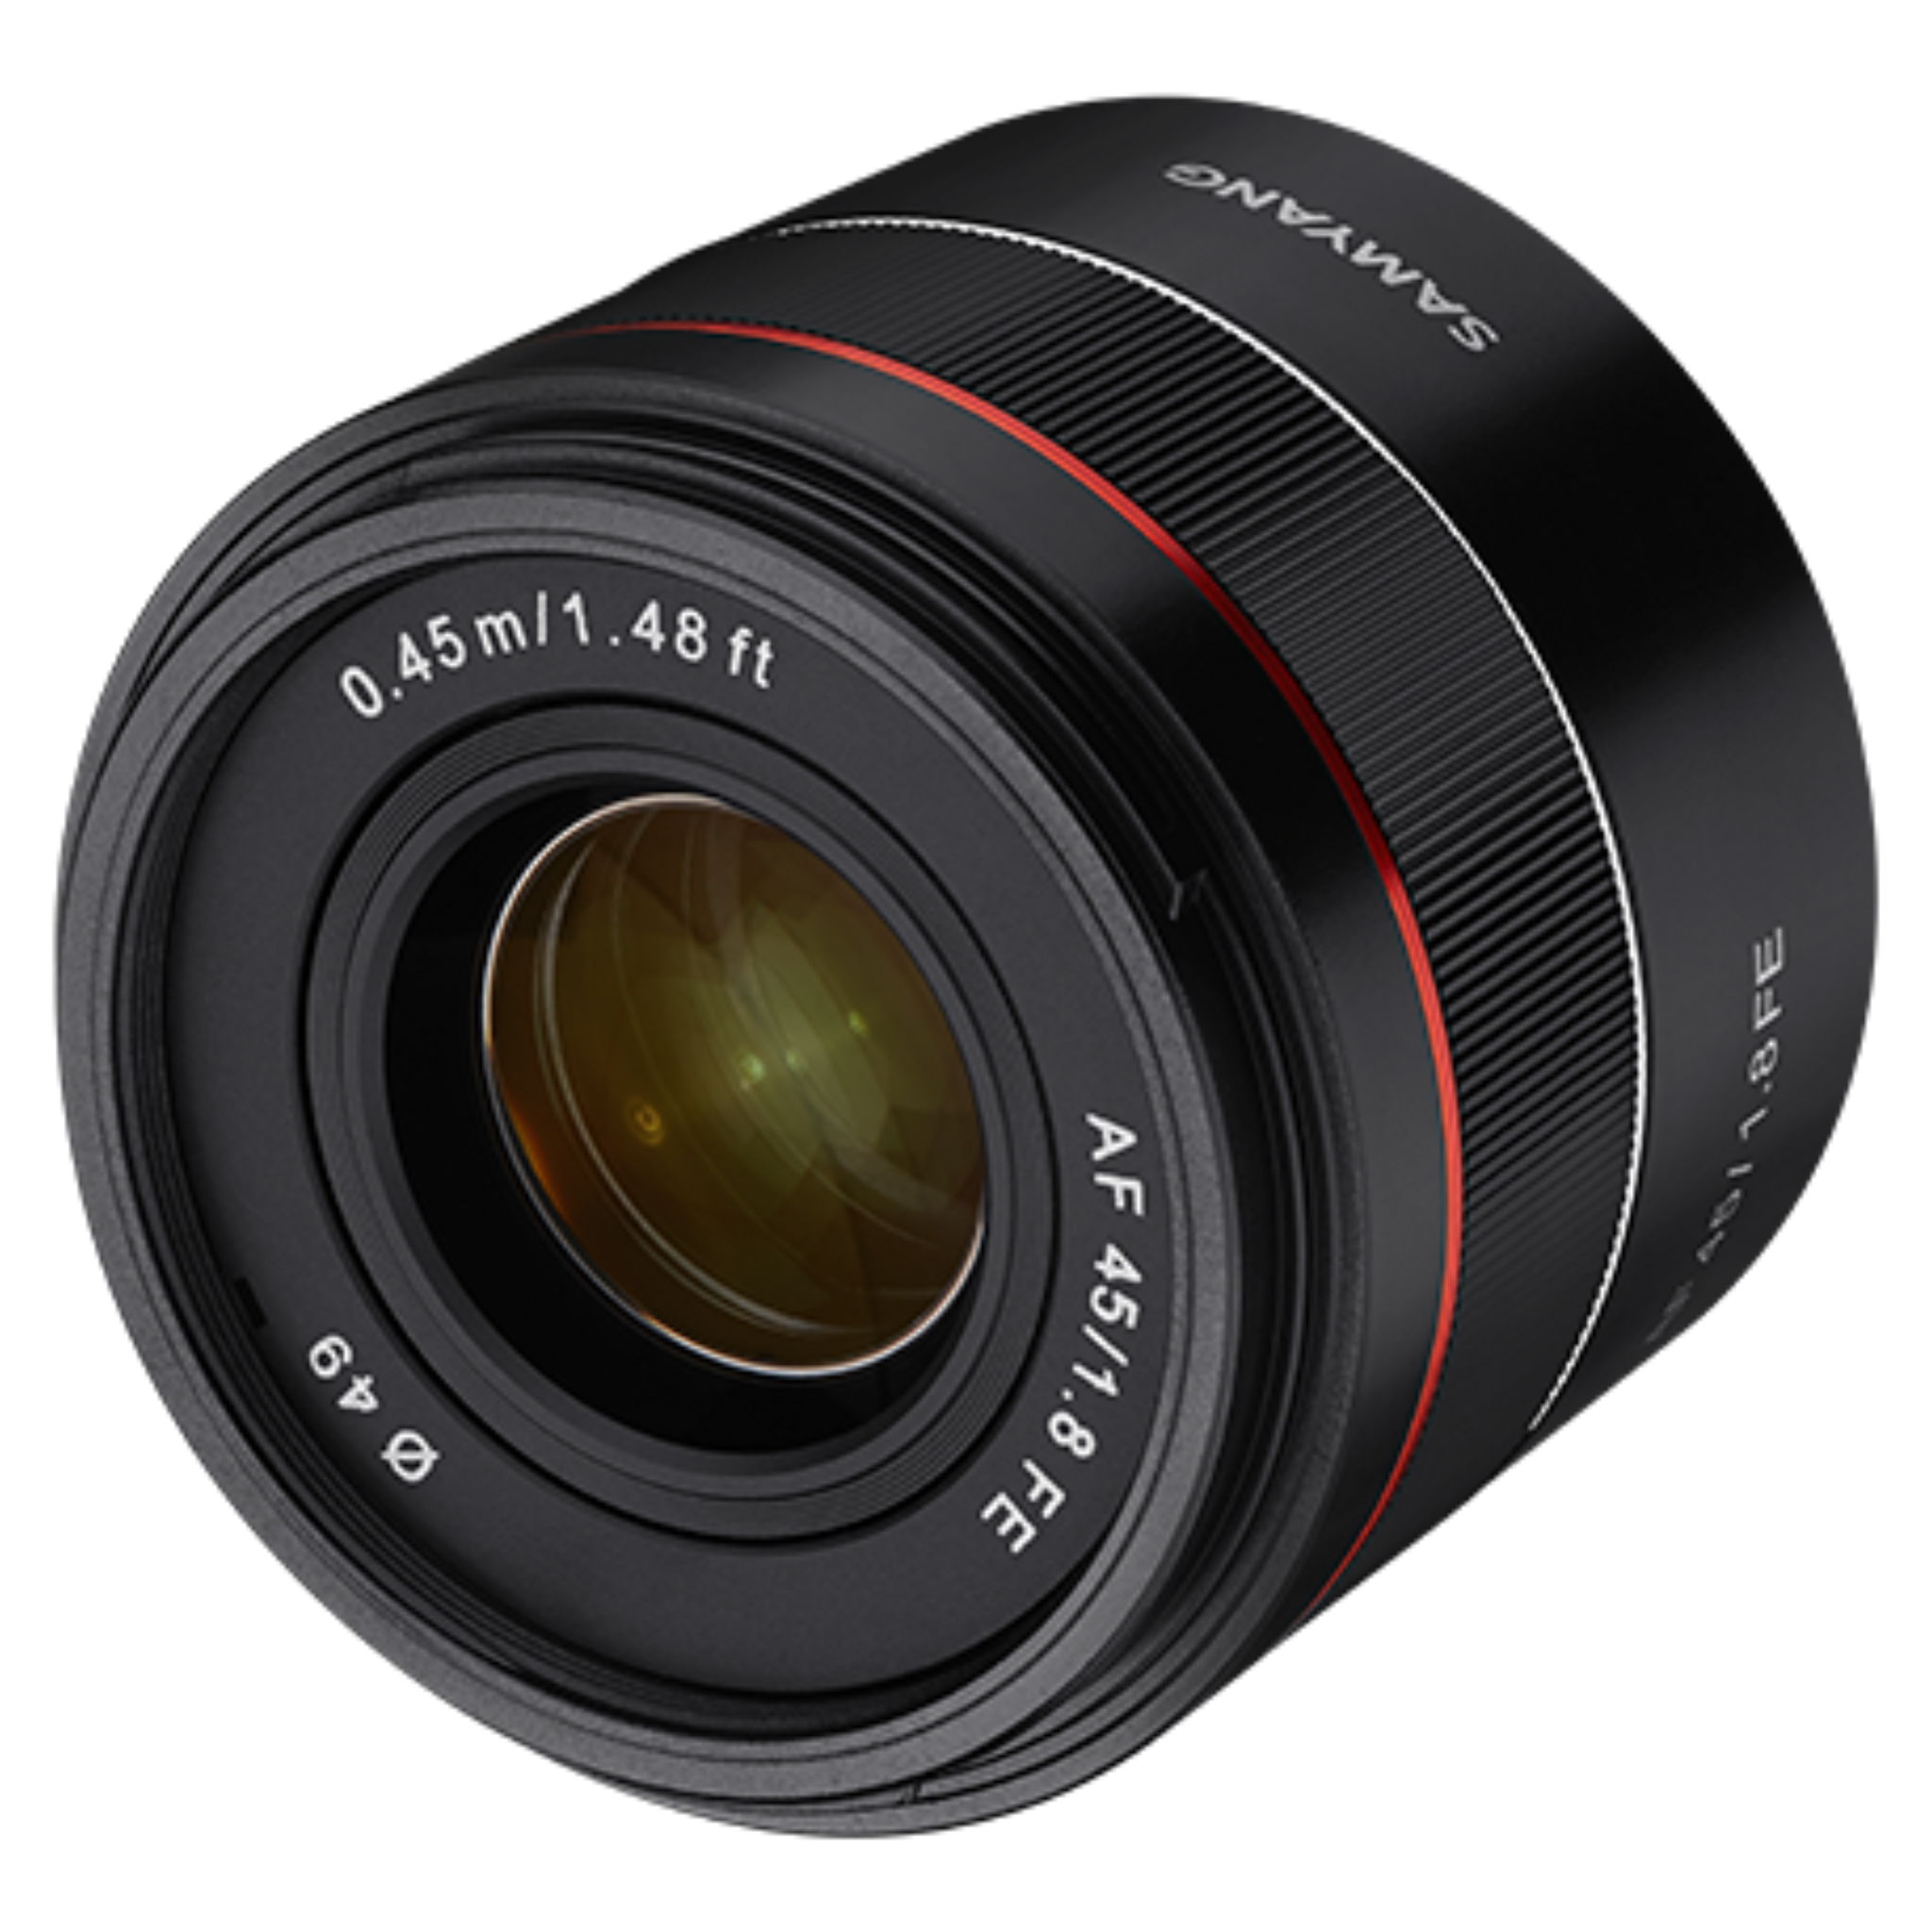 Samyang AF 45mm F1.8 FE Lens (SONY FE)-Camera Lenses-futuromic